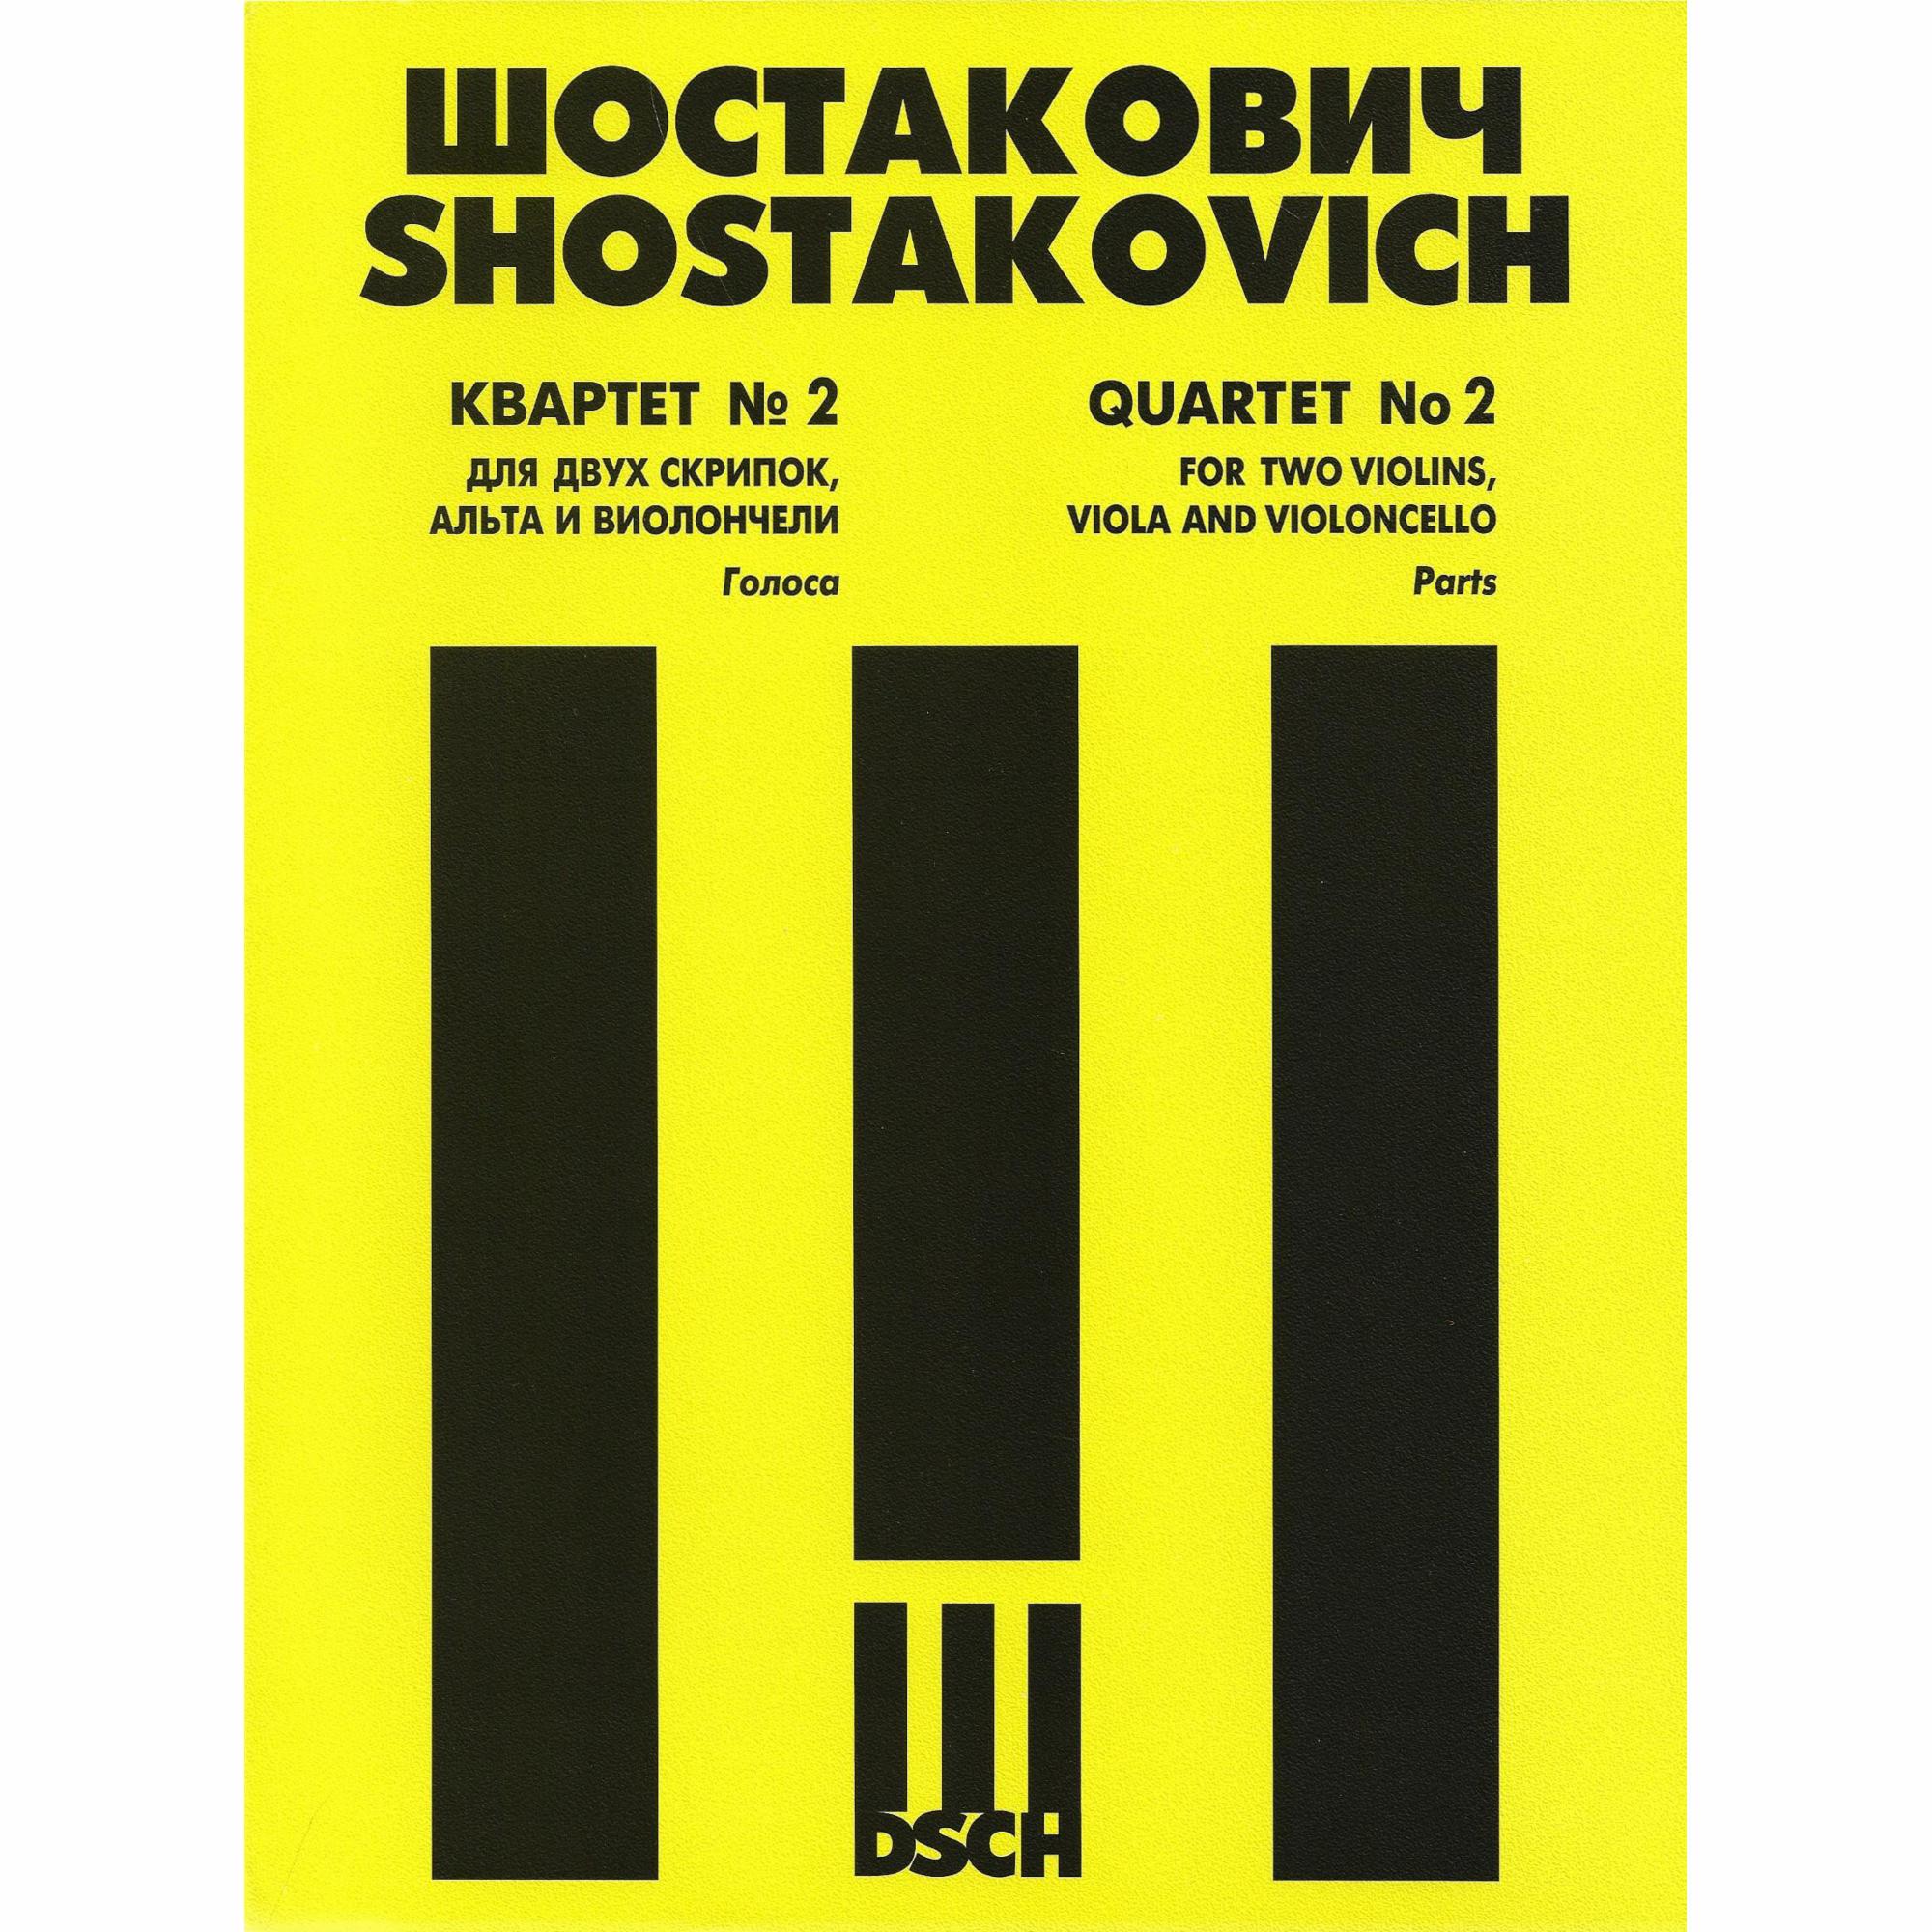 Shostakovich -- String Quartet No. 2